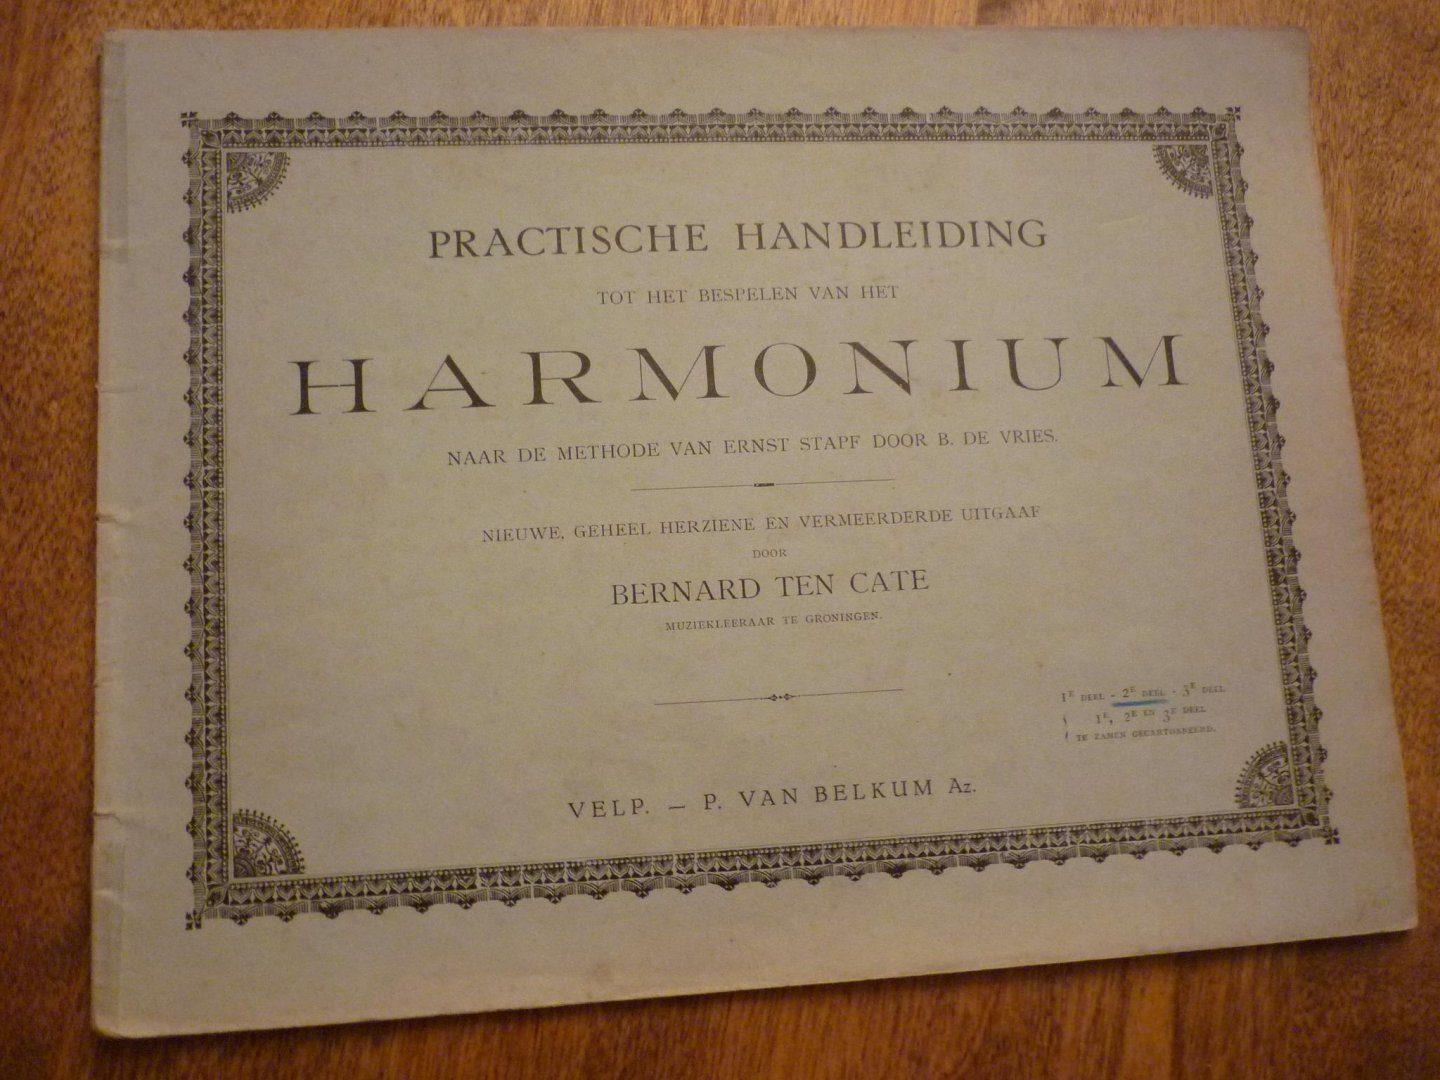 Cate; Bernard ten - Praktische handleiding tot het bespelen van Harmonium - 1e deel